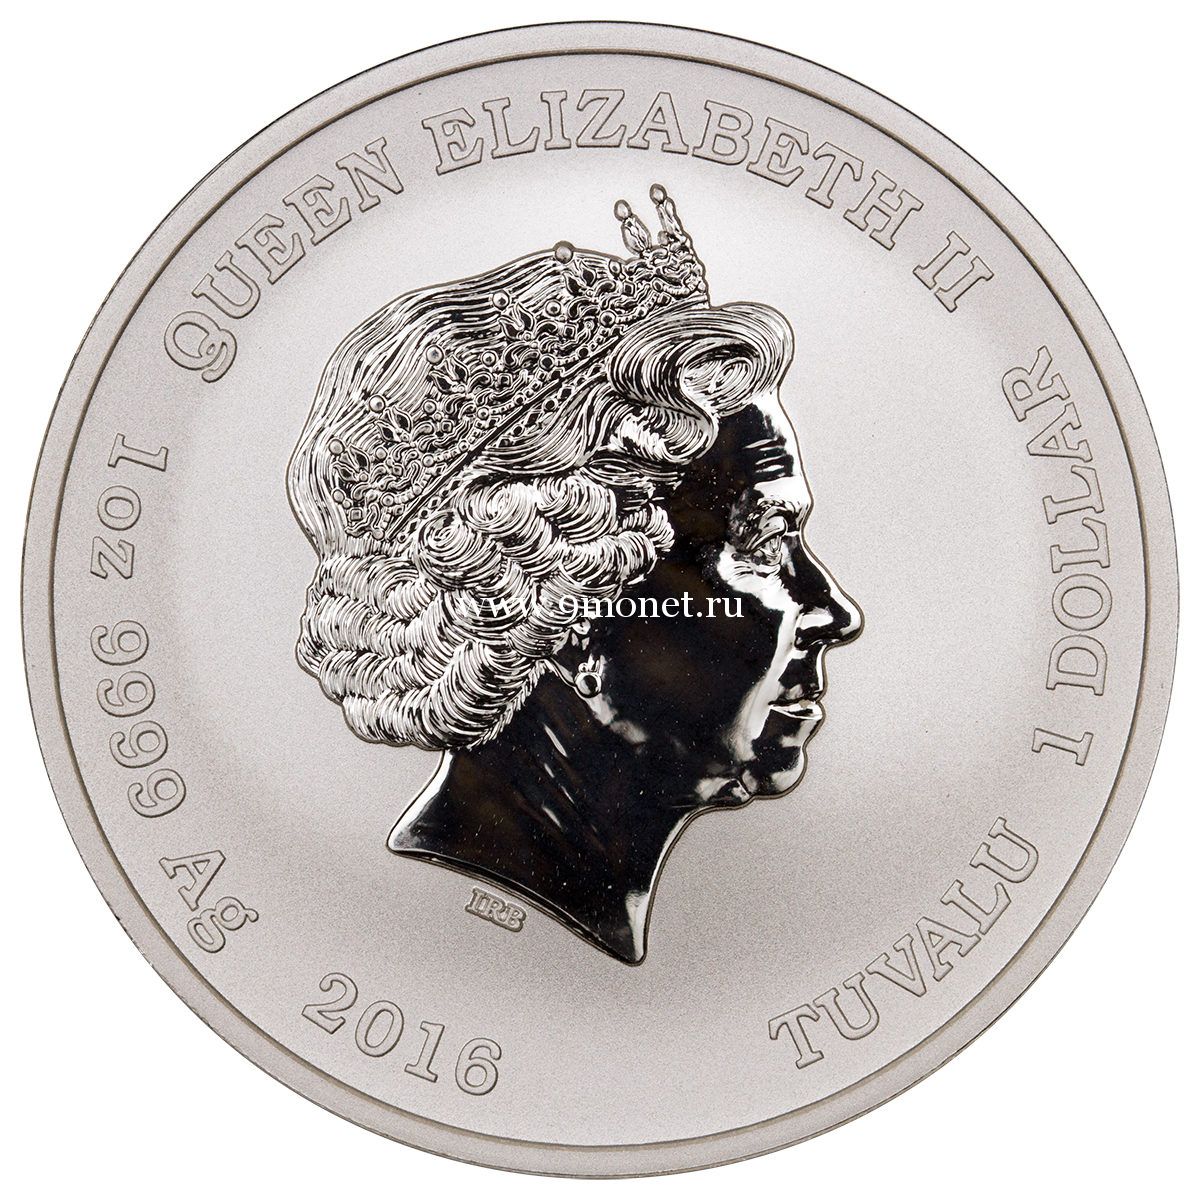 Тувалу 1 доллар 2016 года Перл Харбор серебро UNC купить с доставкой по всей России.